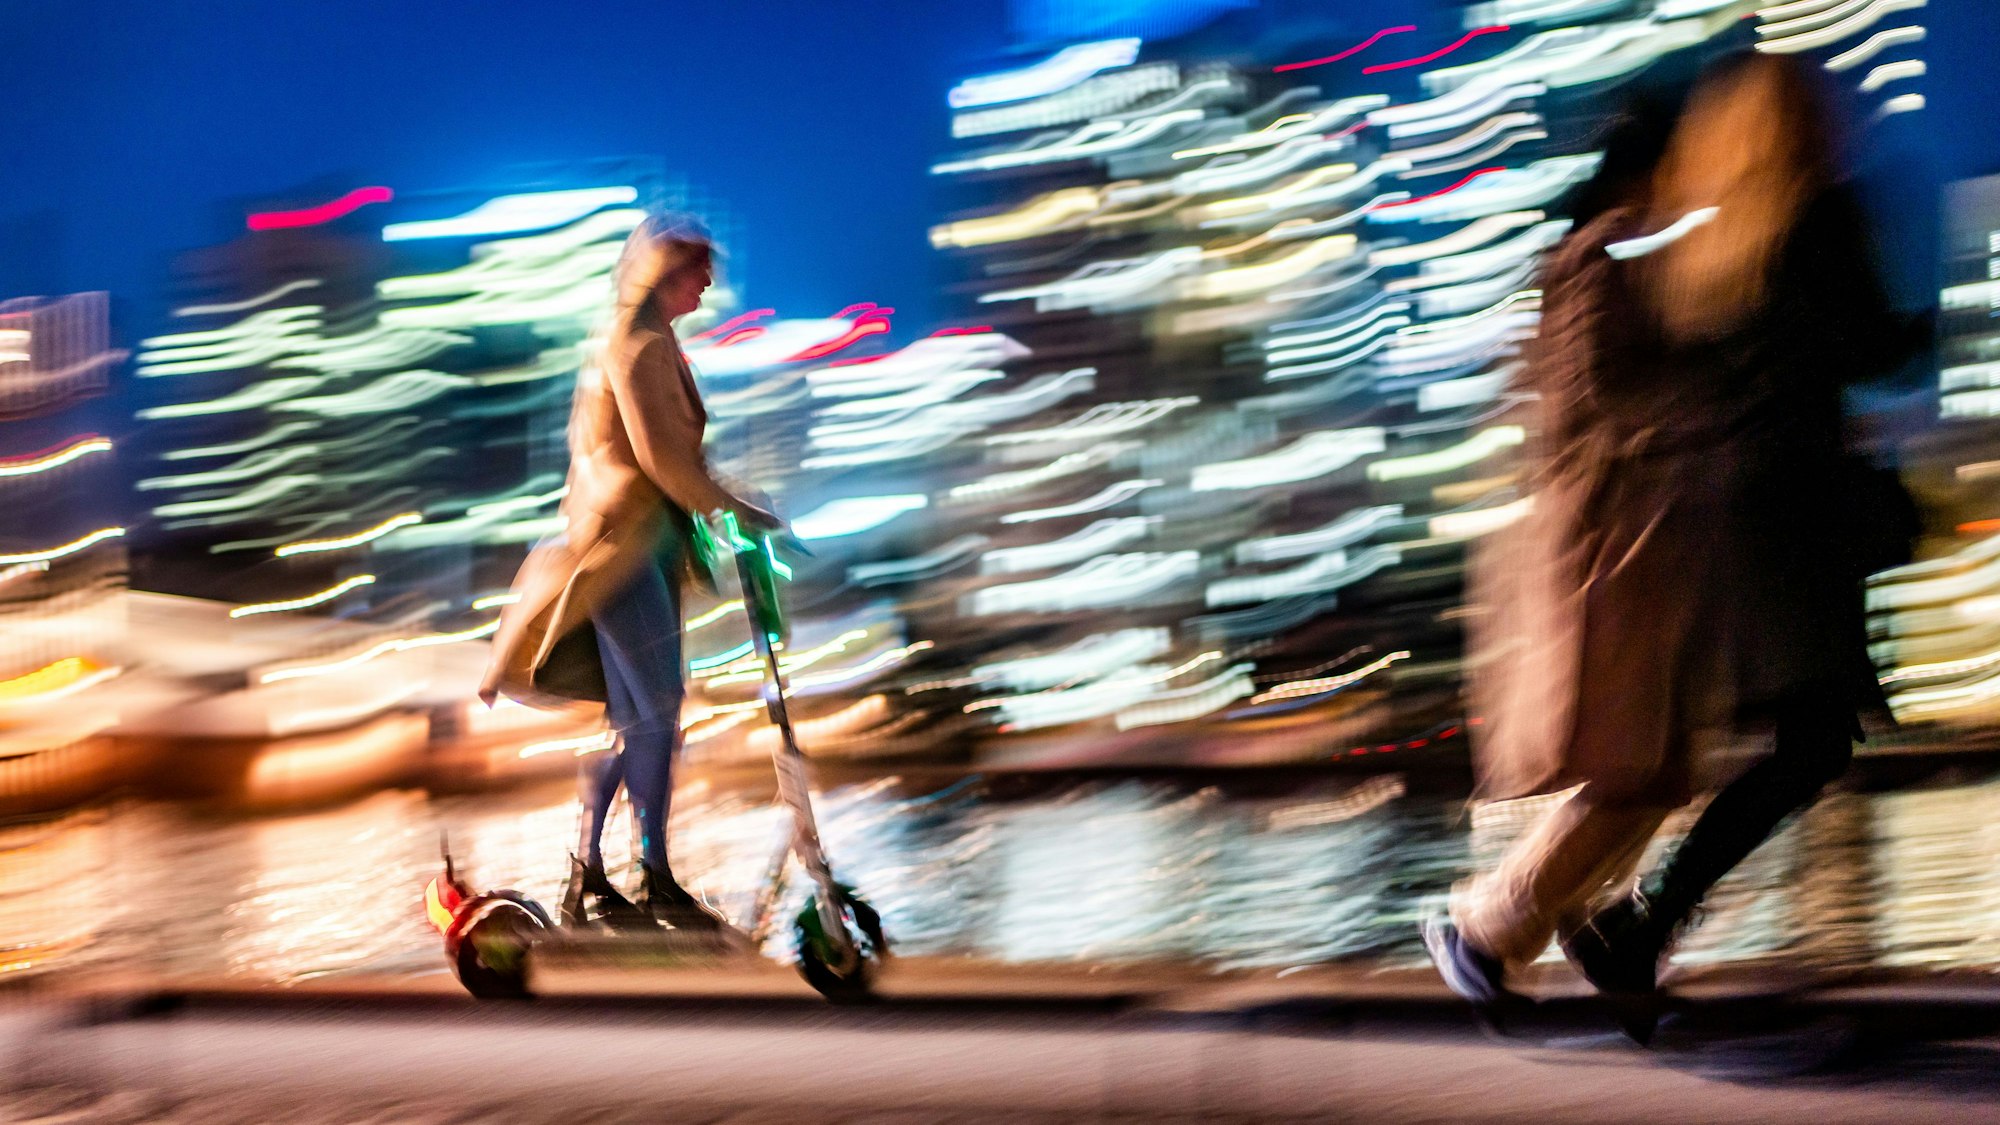 Vor den erleuchteten Hochhäusern sind am Abend eine Frau auf einem E-Scooter (l) und zwei Spaziergängerinnen (r) unterwegs. Das Bild hat einen starken Wischeffekt.